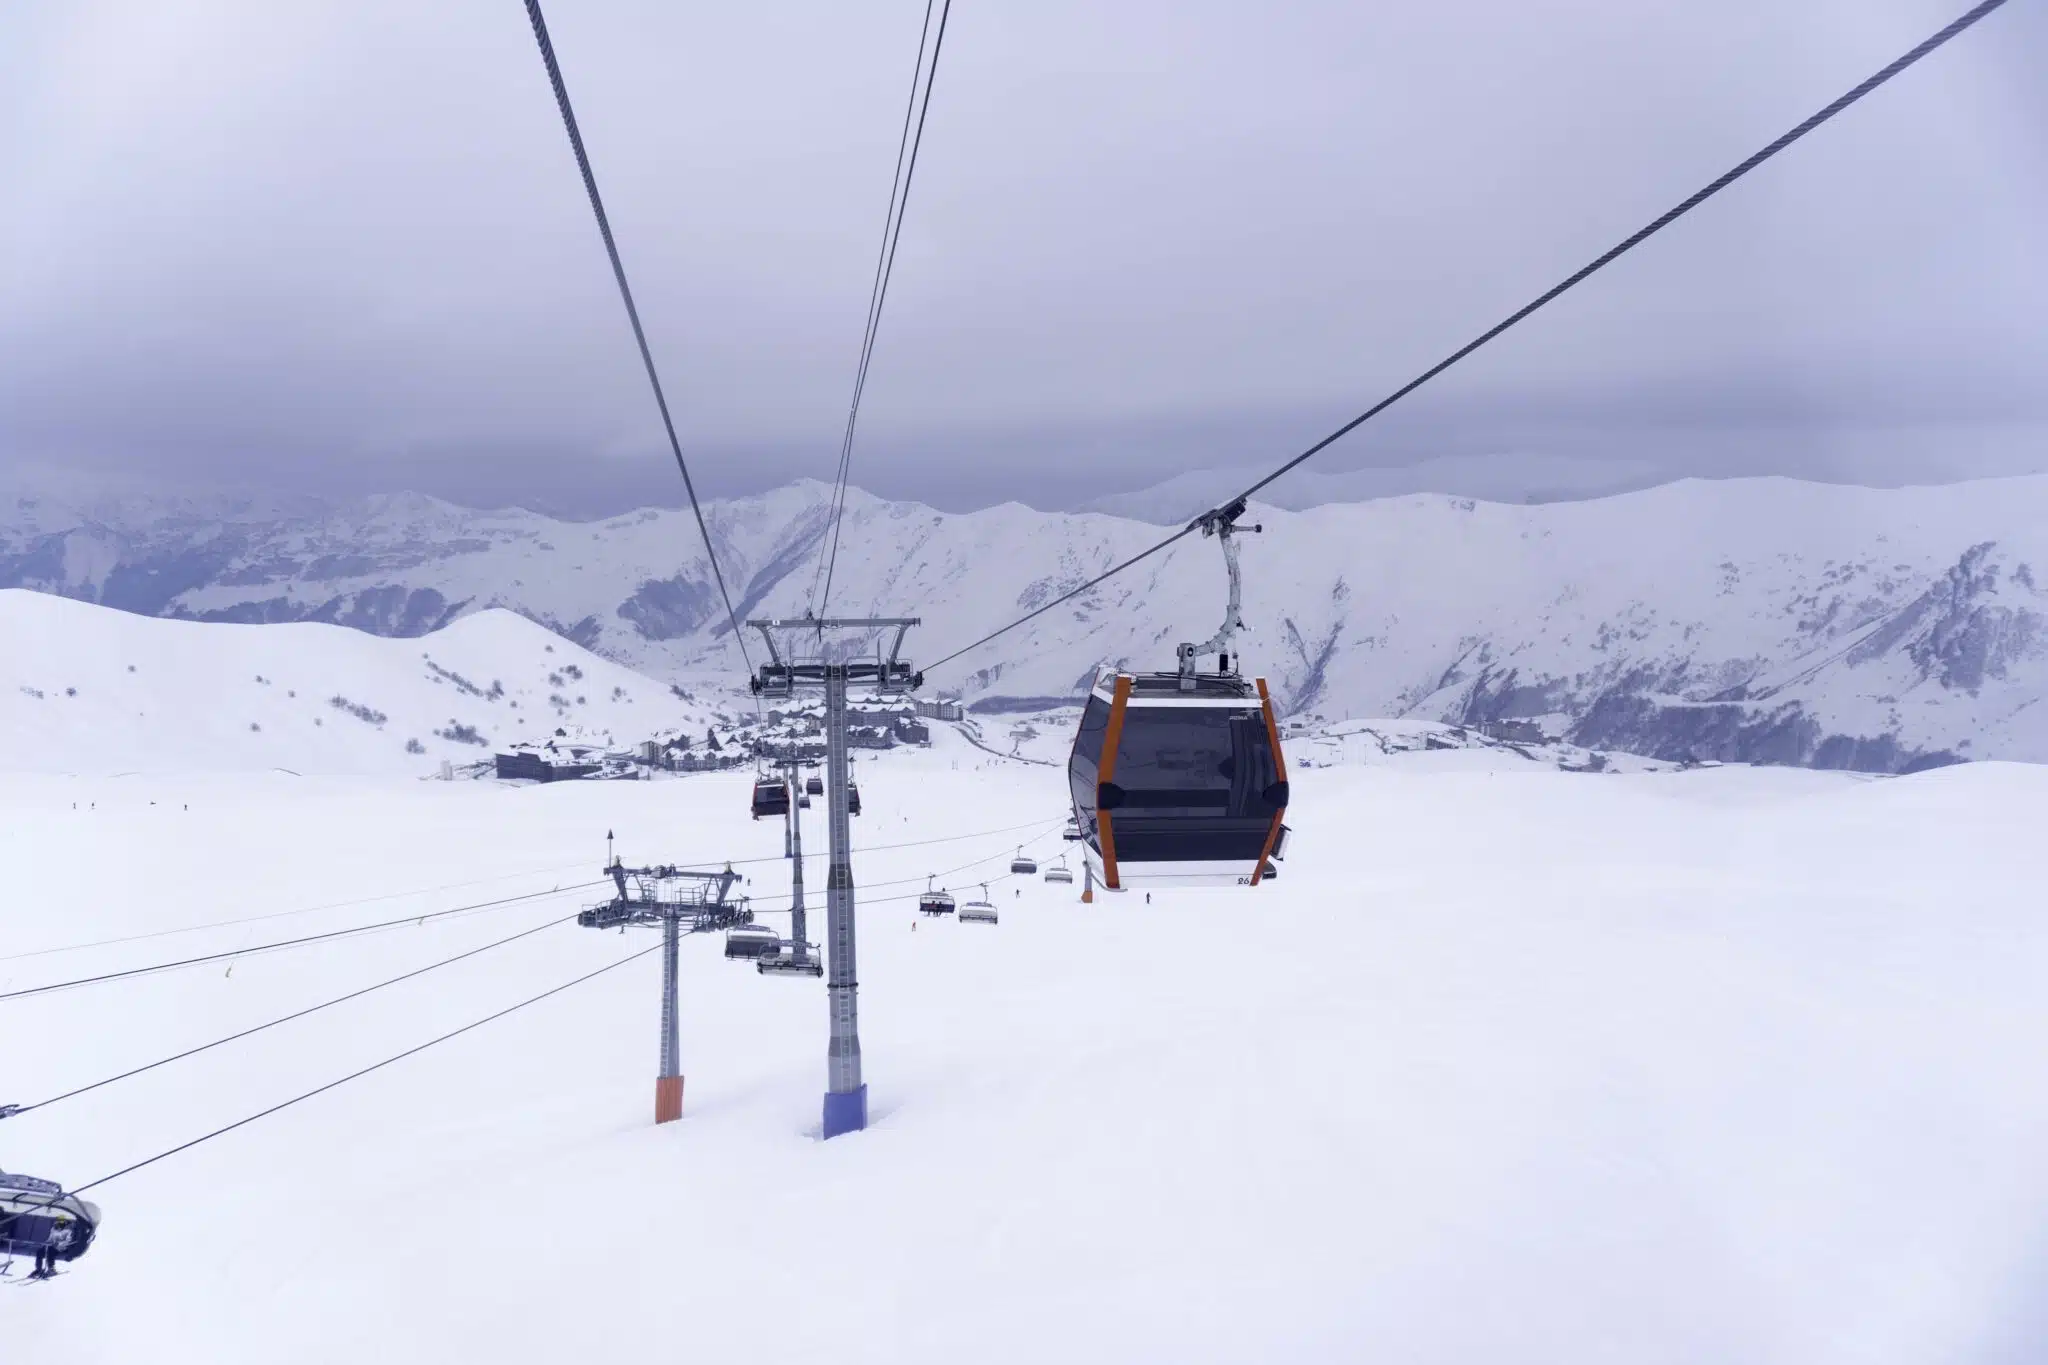 Gudauri Ski Resort